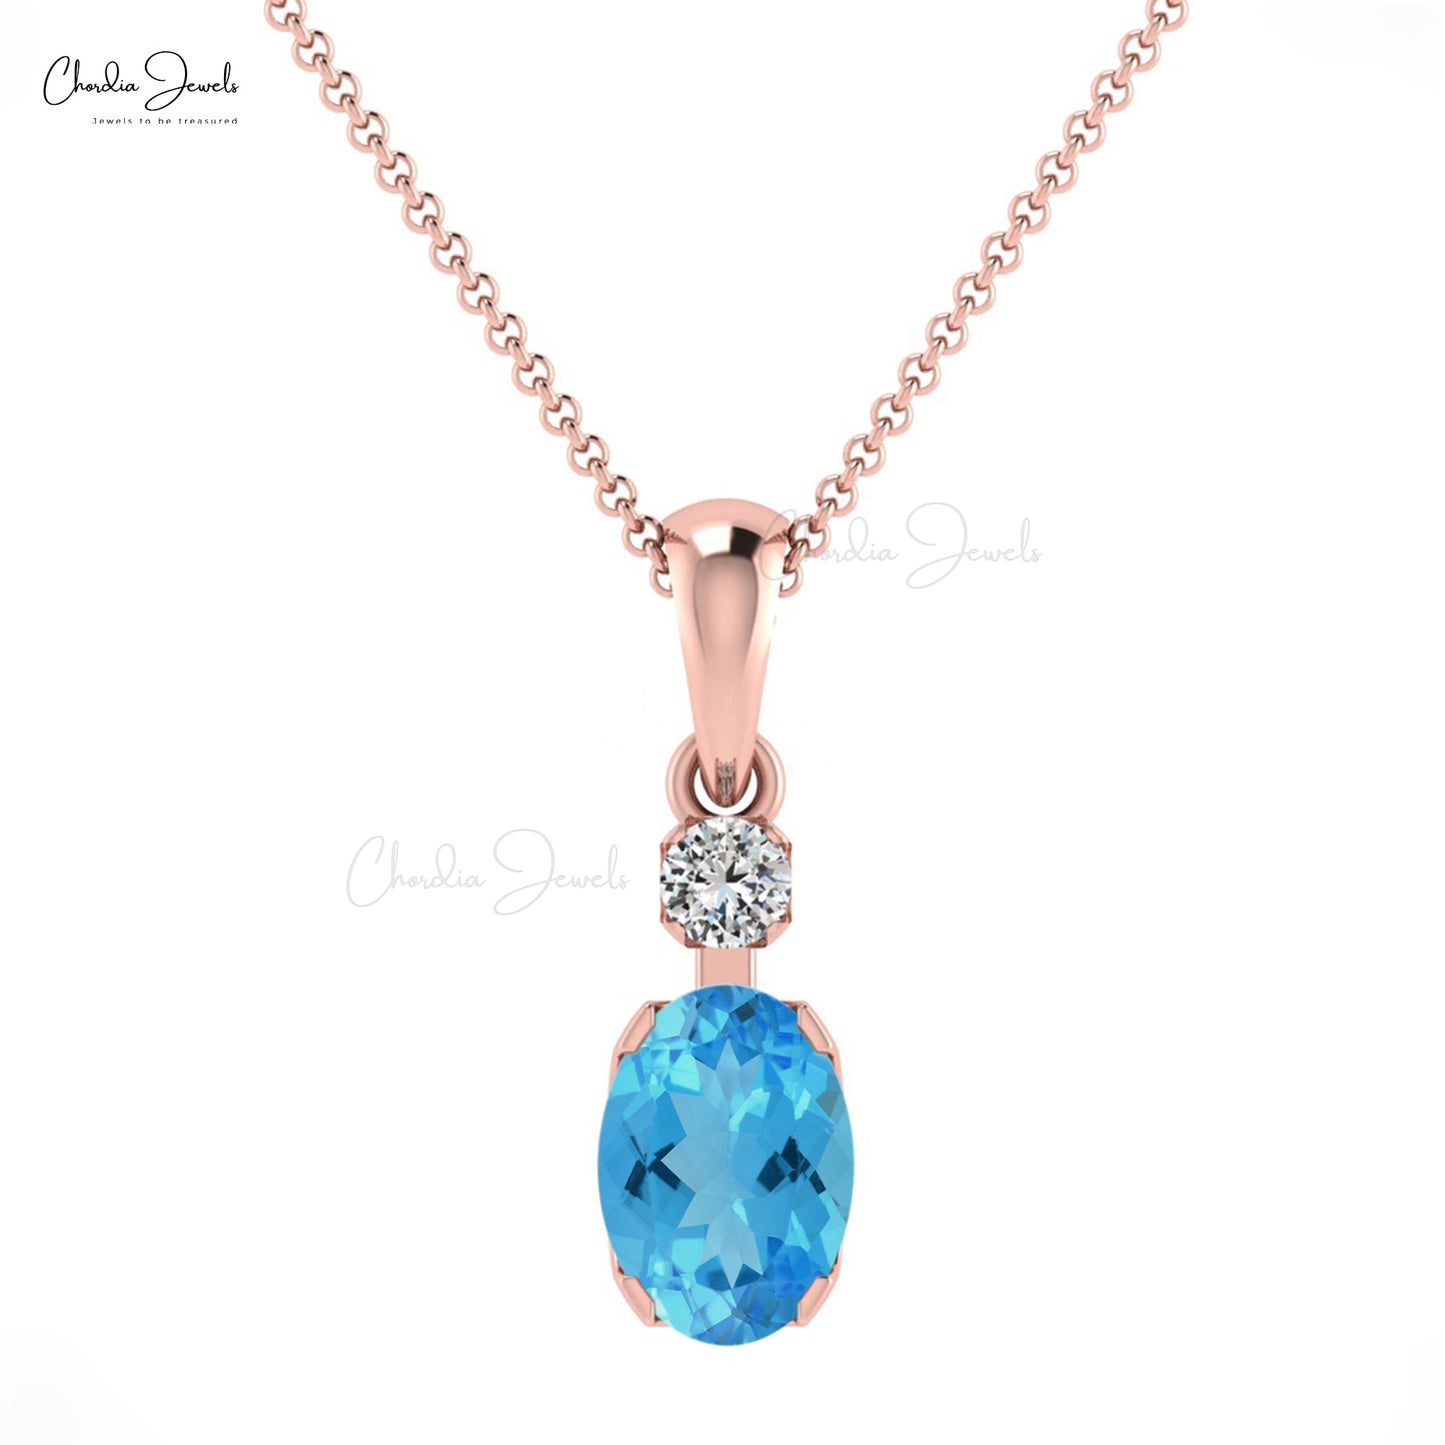 Delicate Women Fine Jewelry Swiss Blue Topaz & Diamond Pendant in 14K Gold